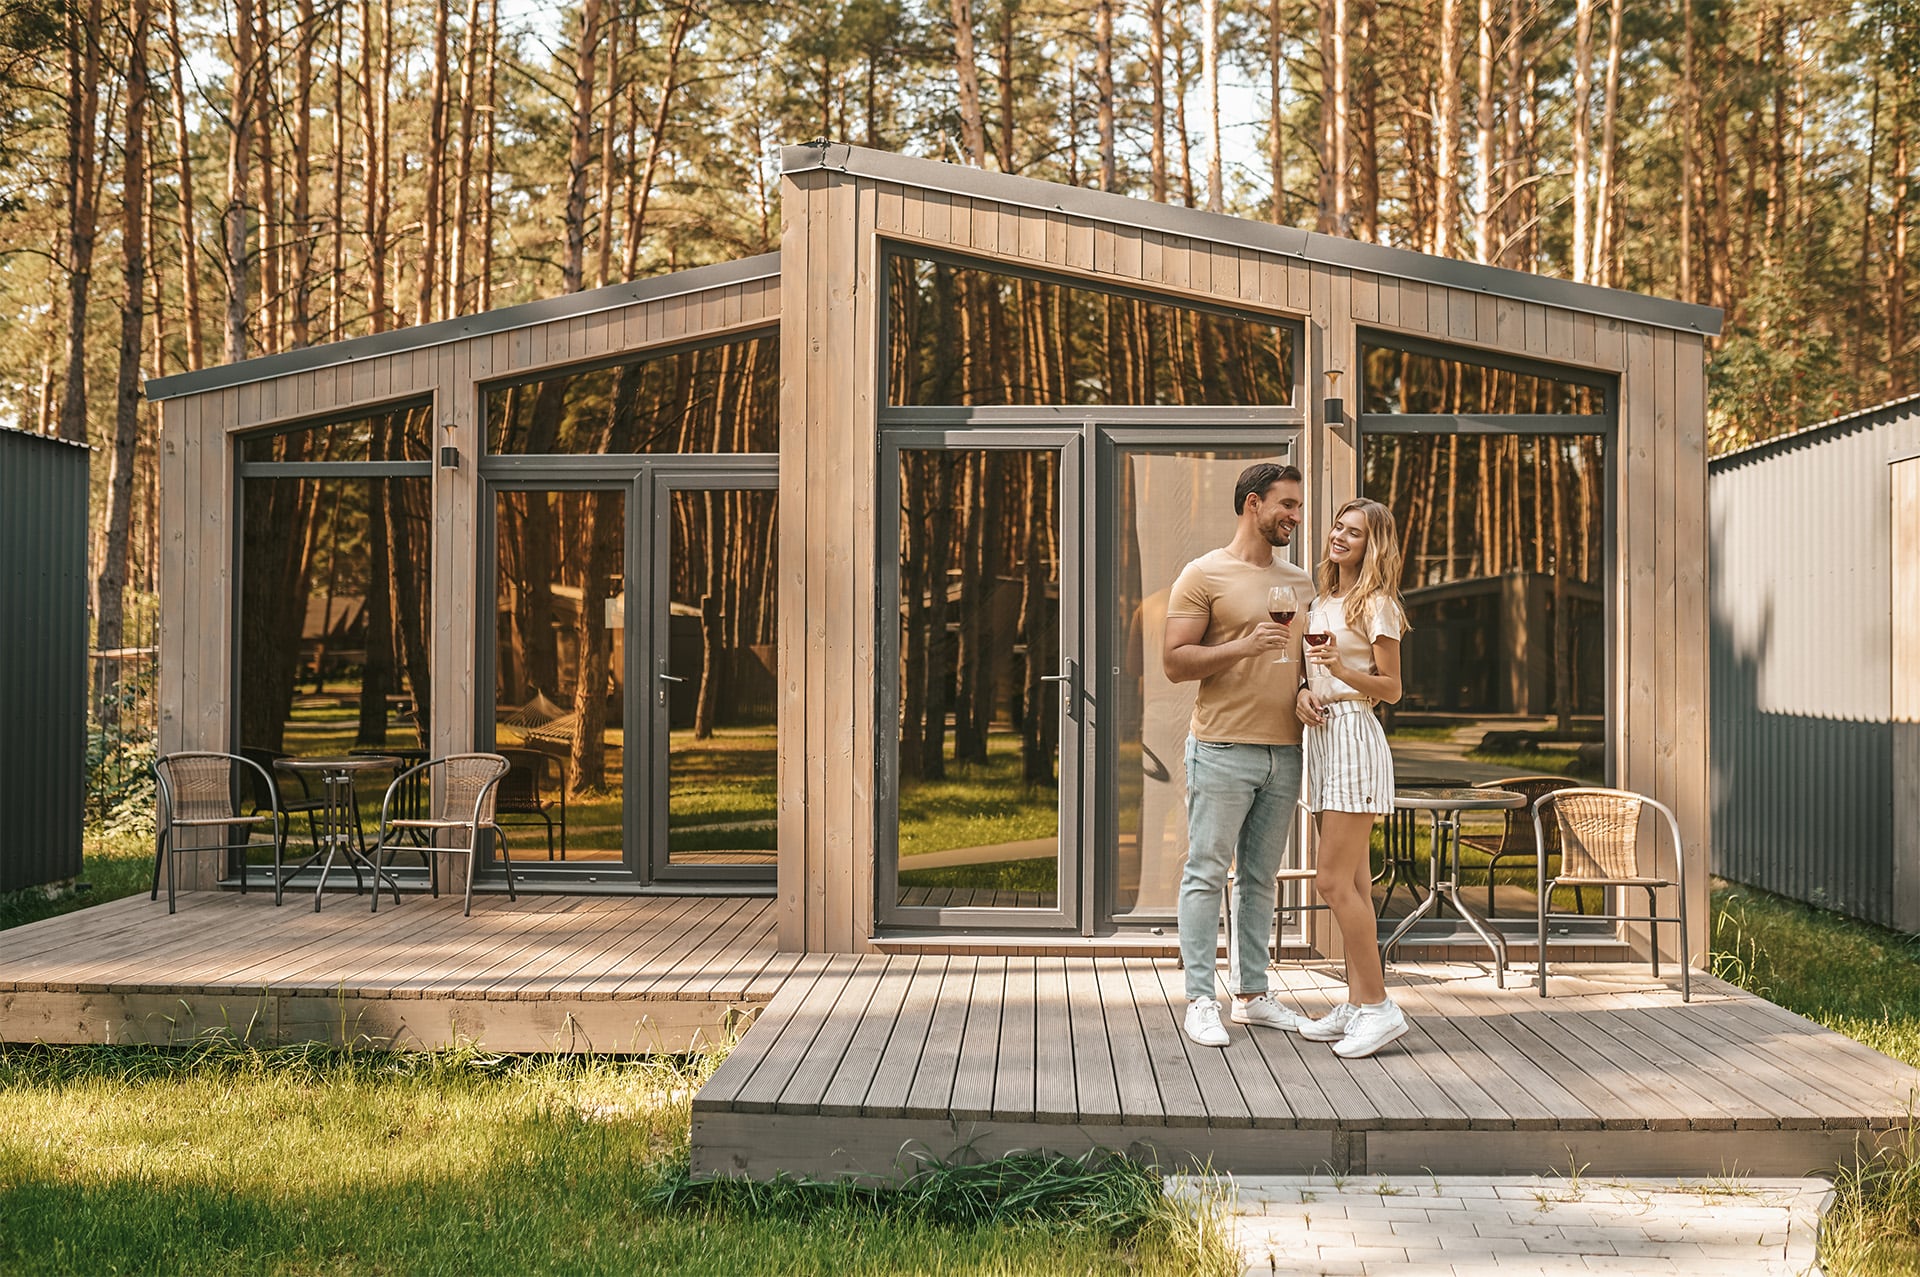 Verliebtes Pärchen steht auf Terrasse eines modularem Holzbau Hauses und trinkt Wein.